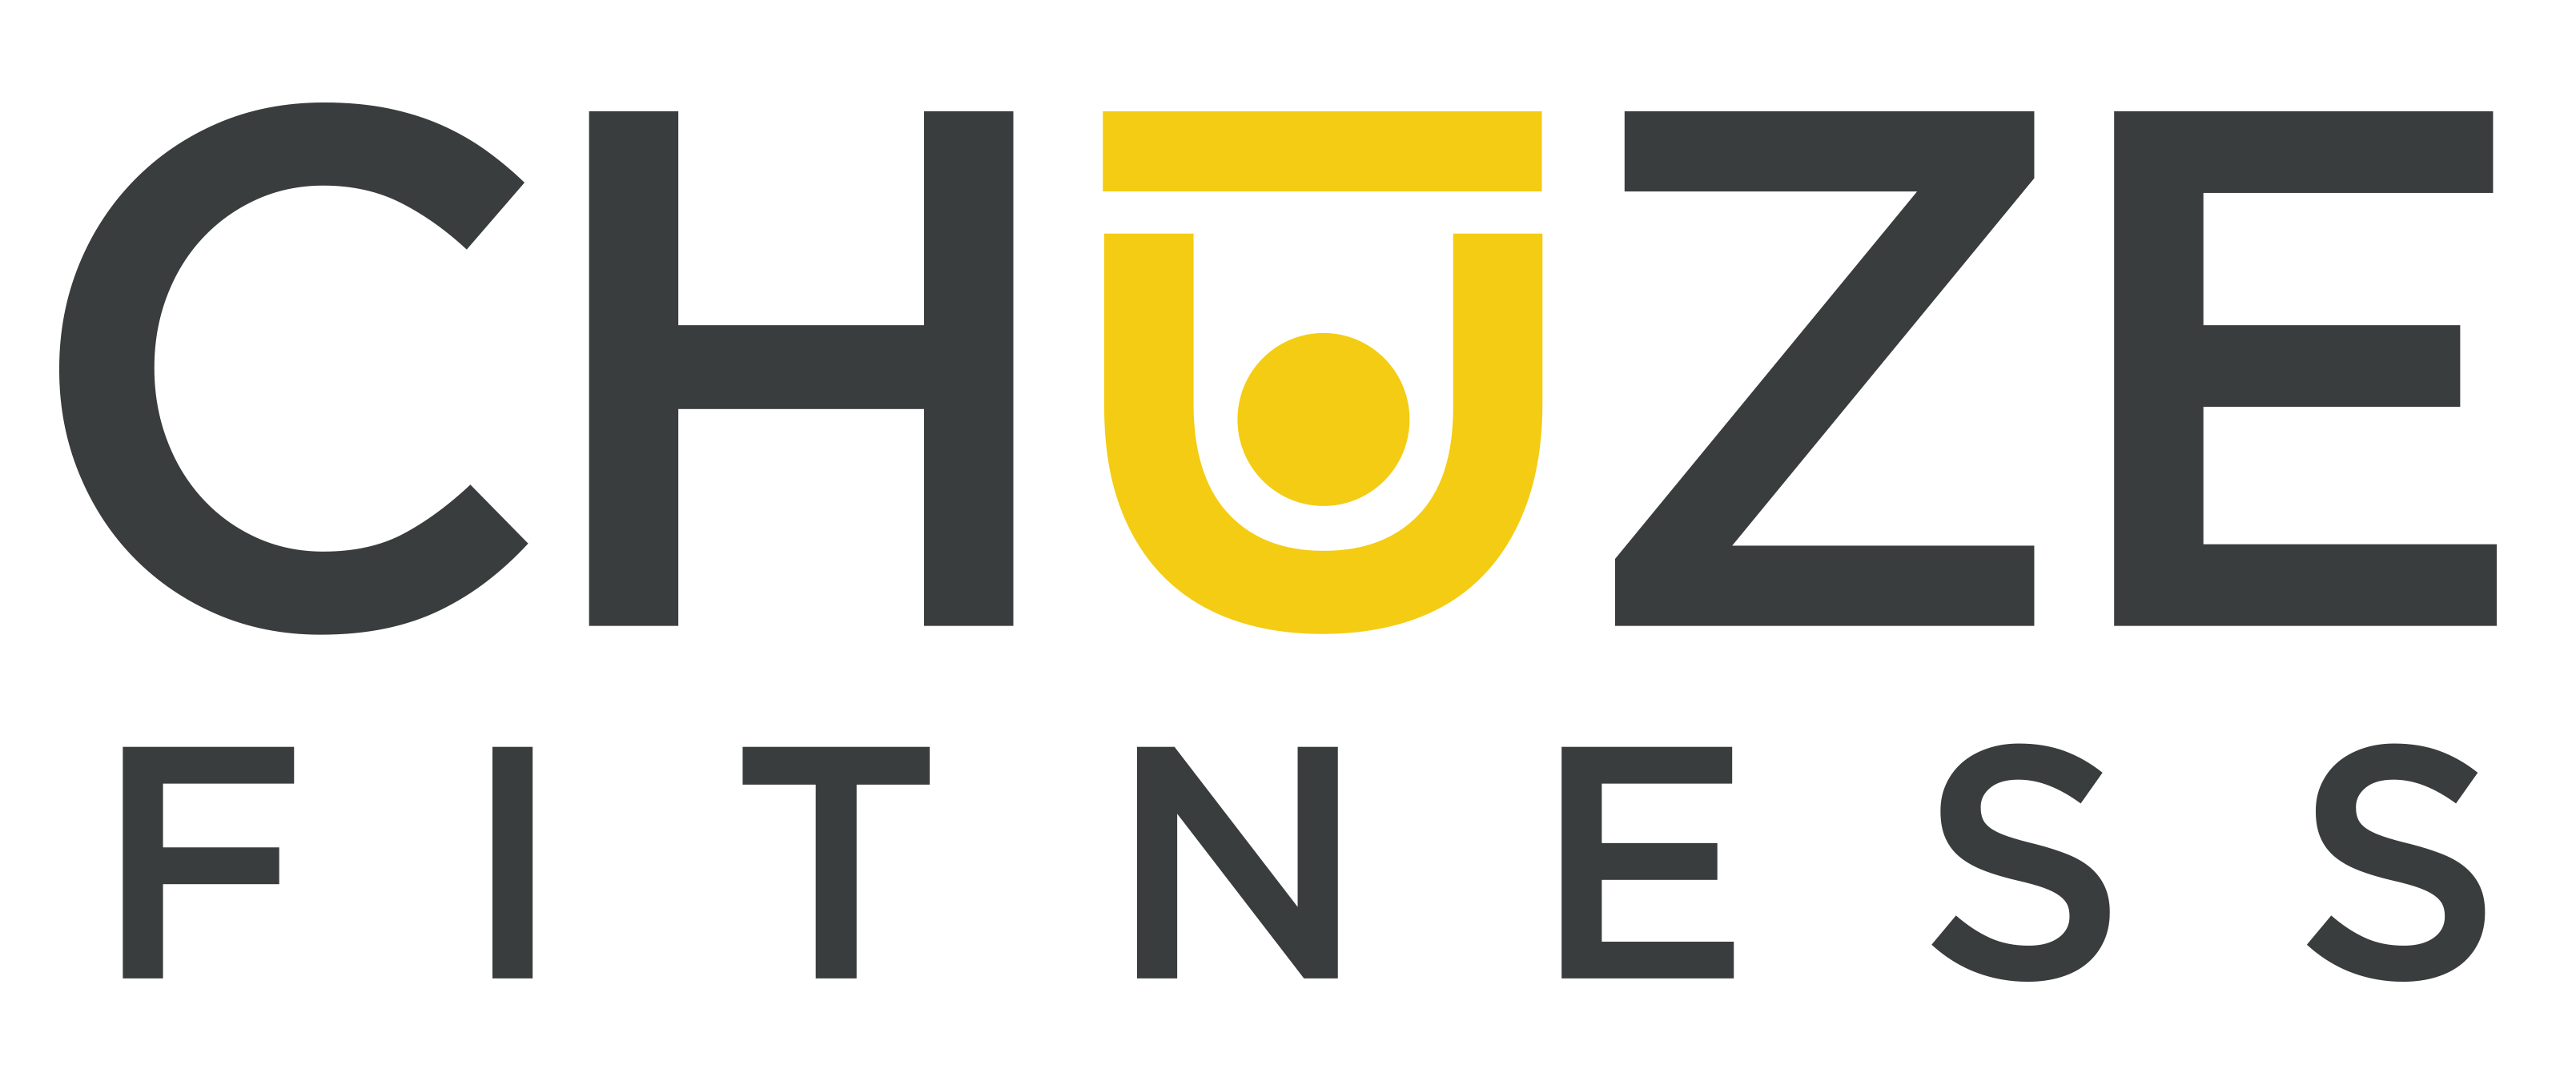 Chuze Fitness logo